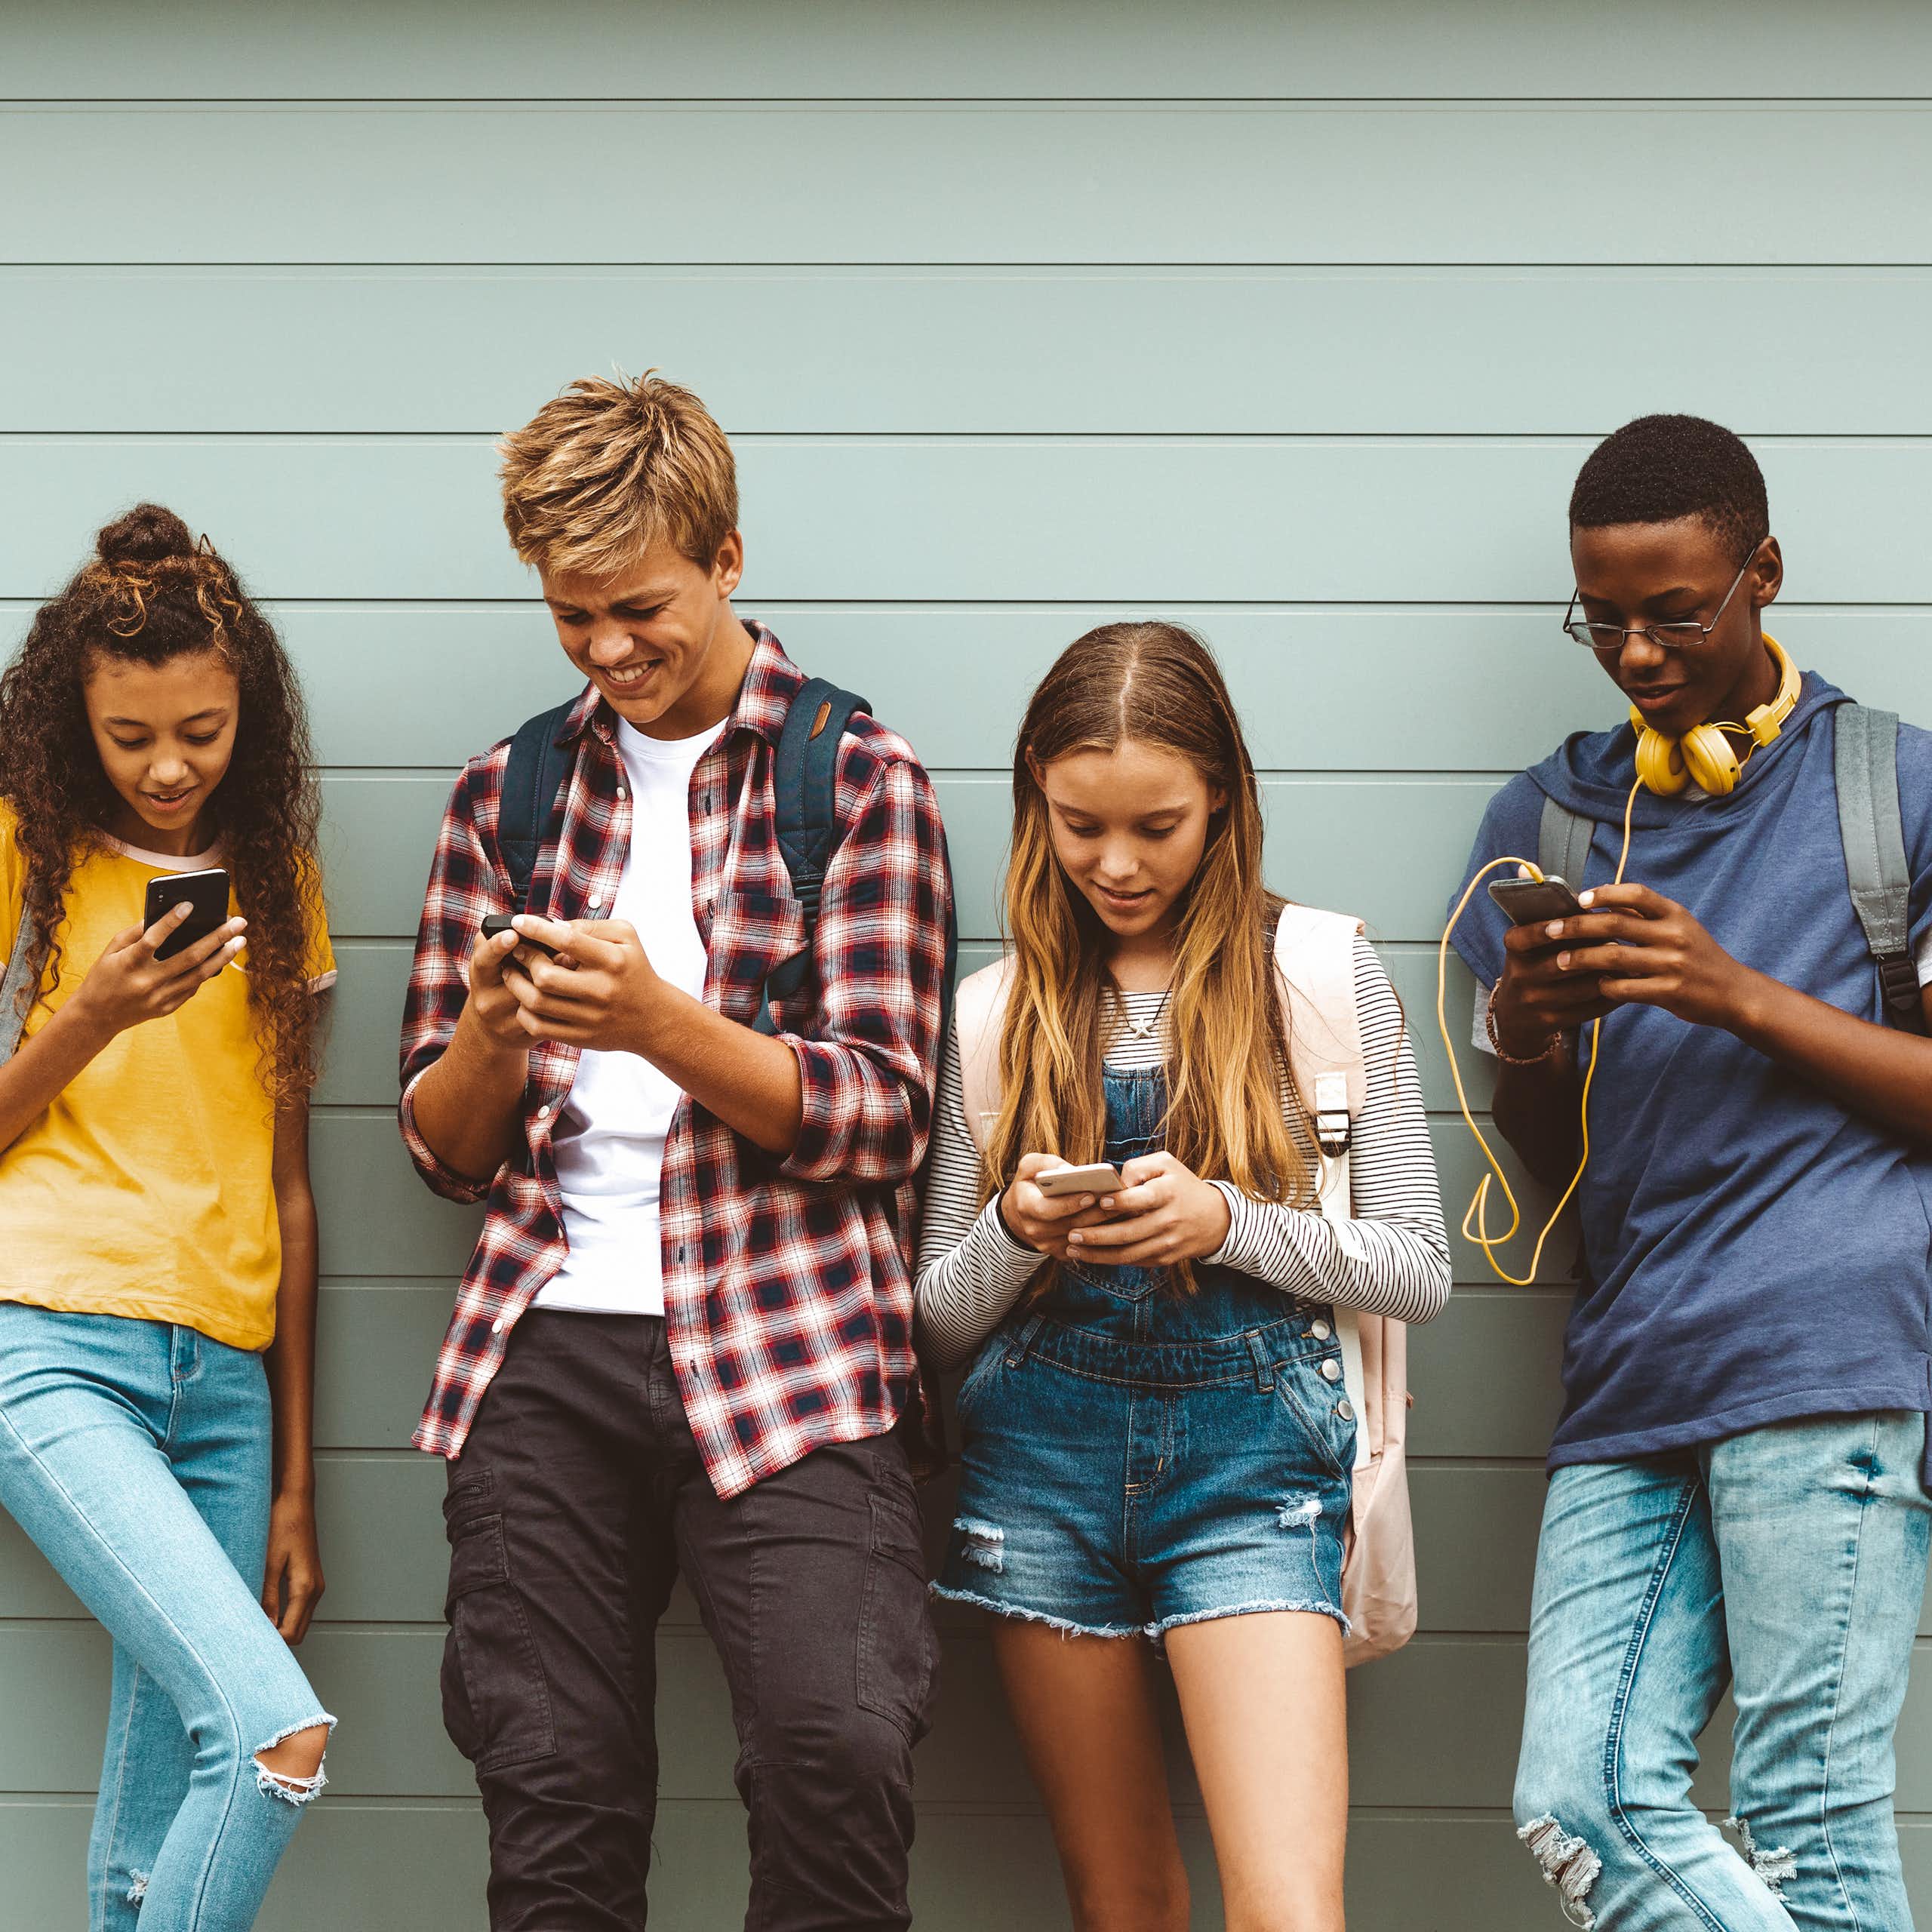 Teenagers looking at phones